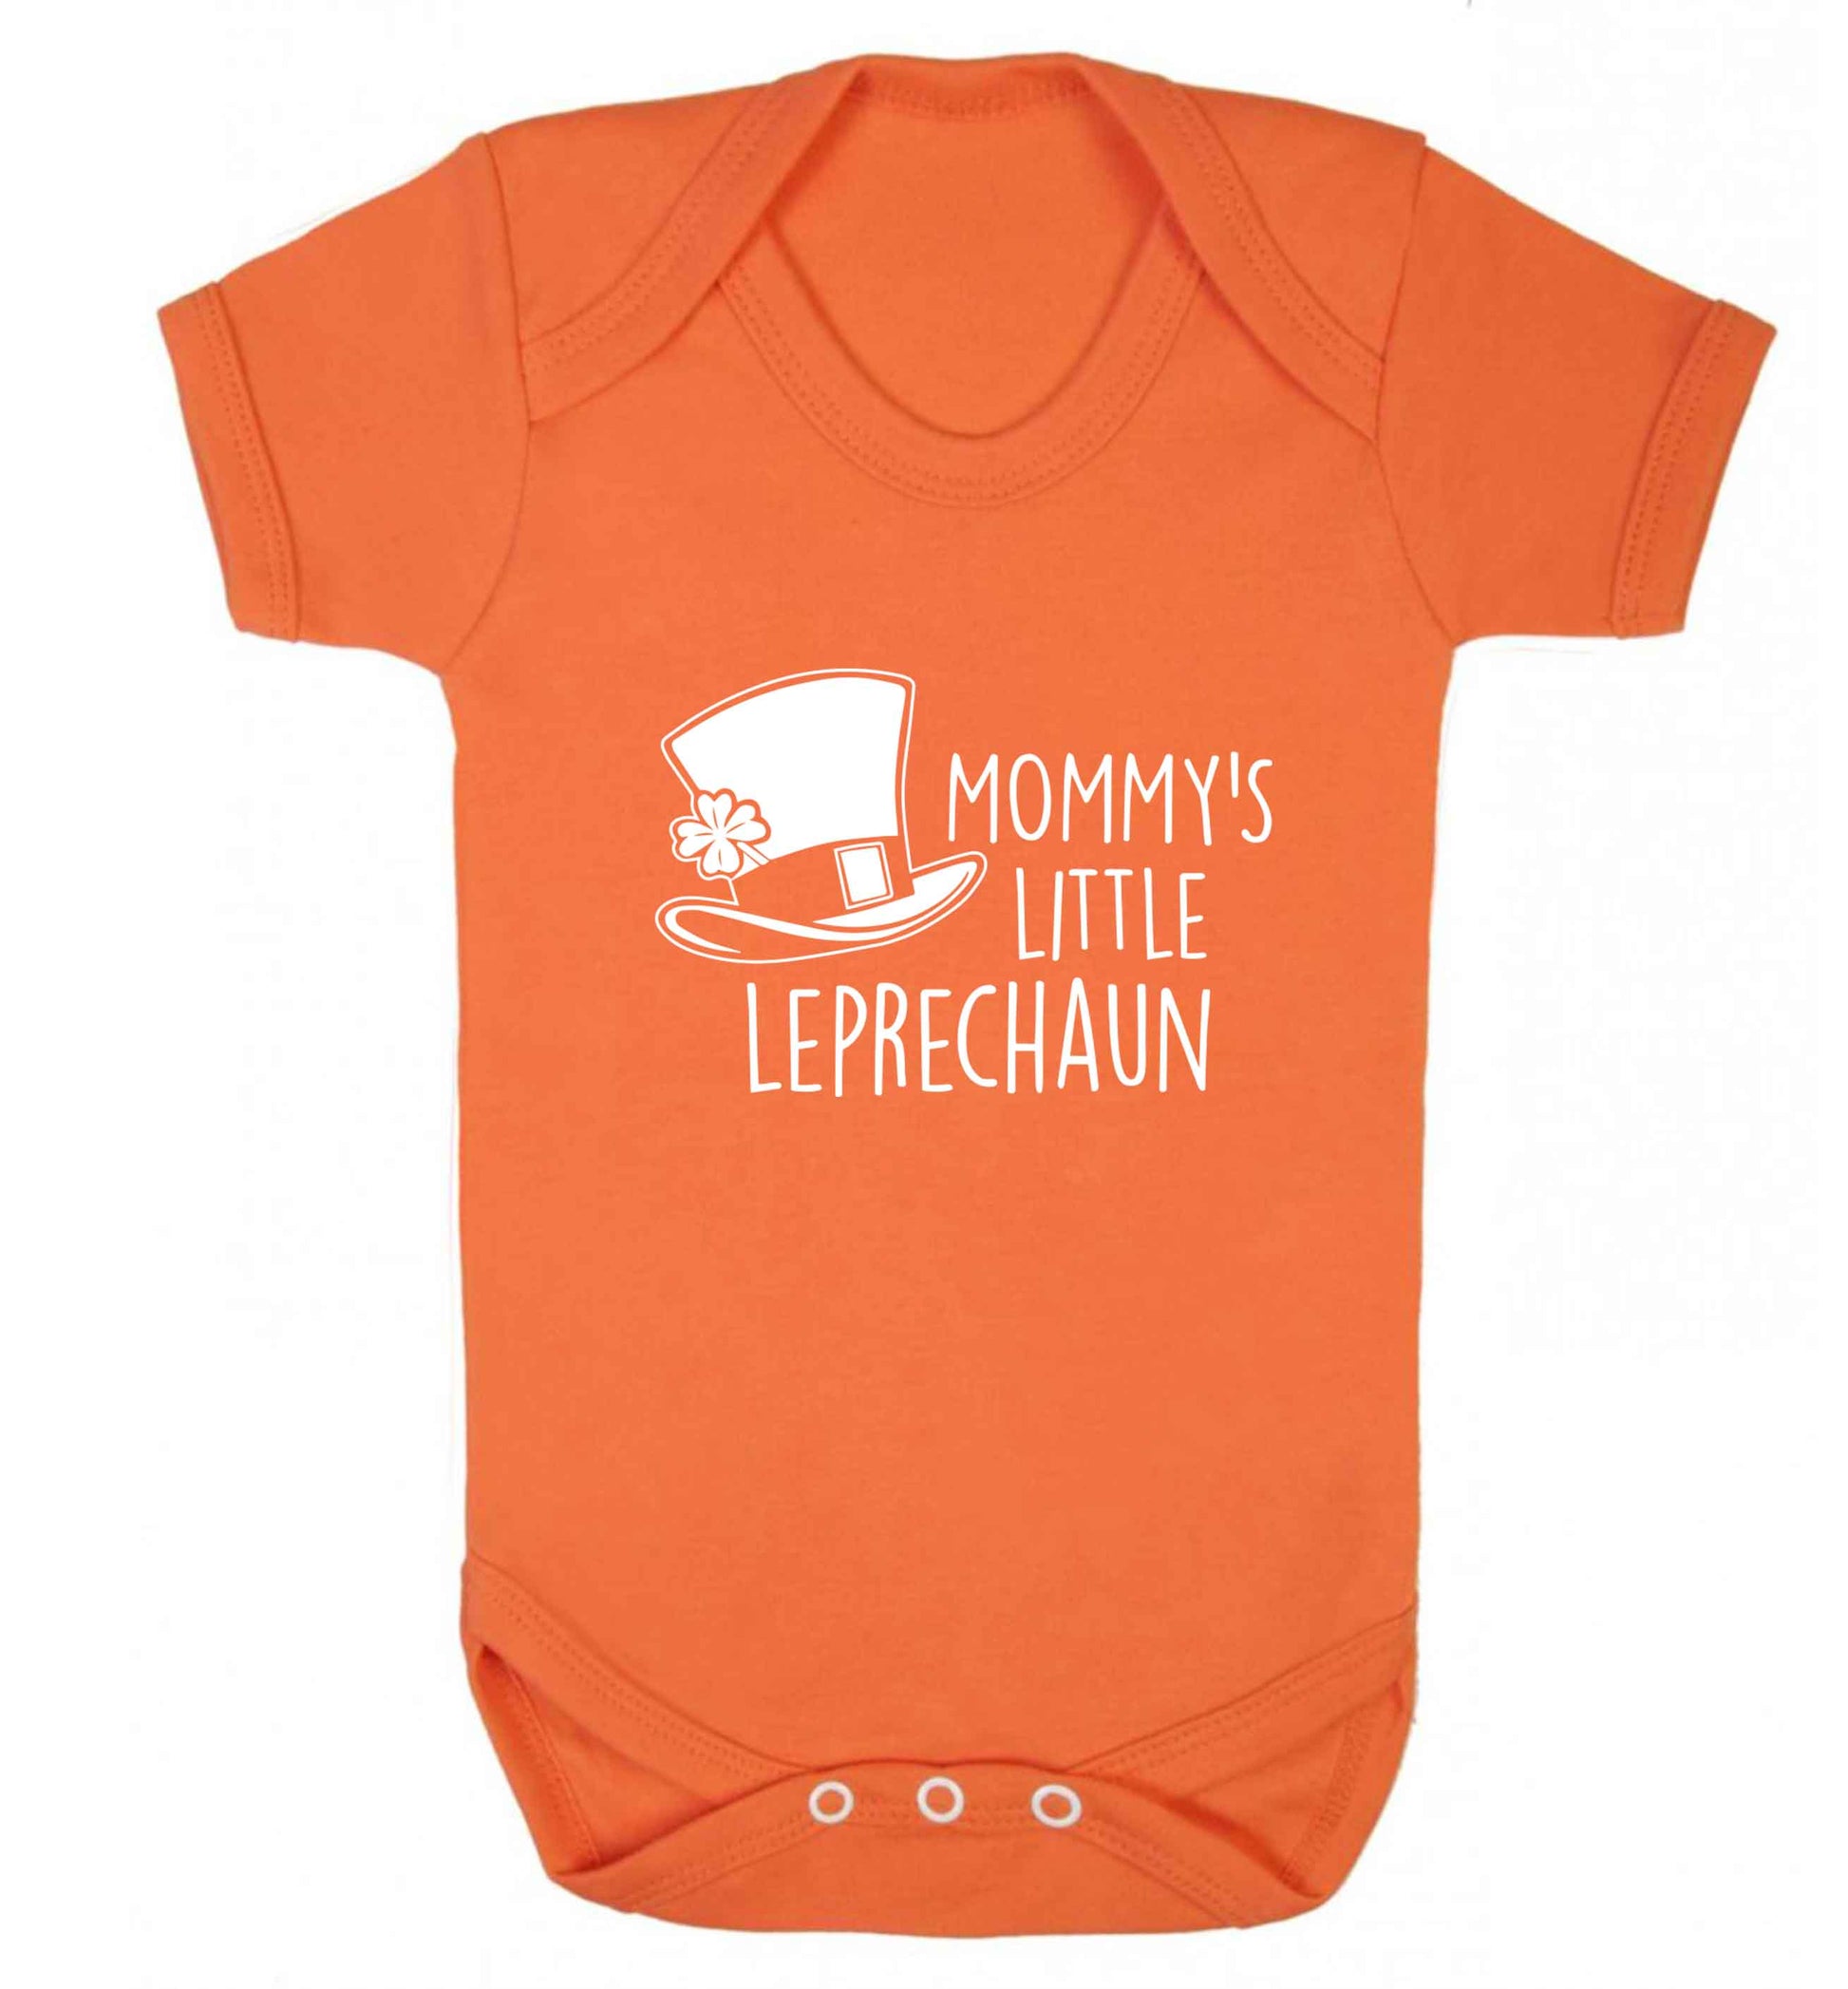 Mommy's little leprechaun baby vest orange 18-24 months